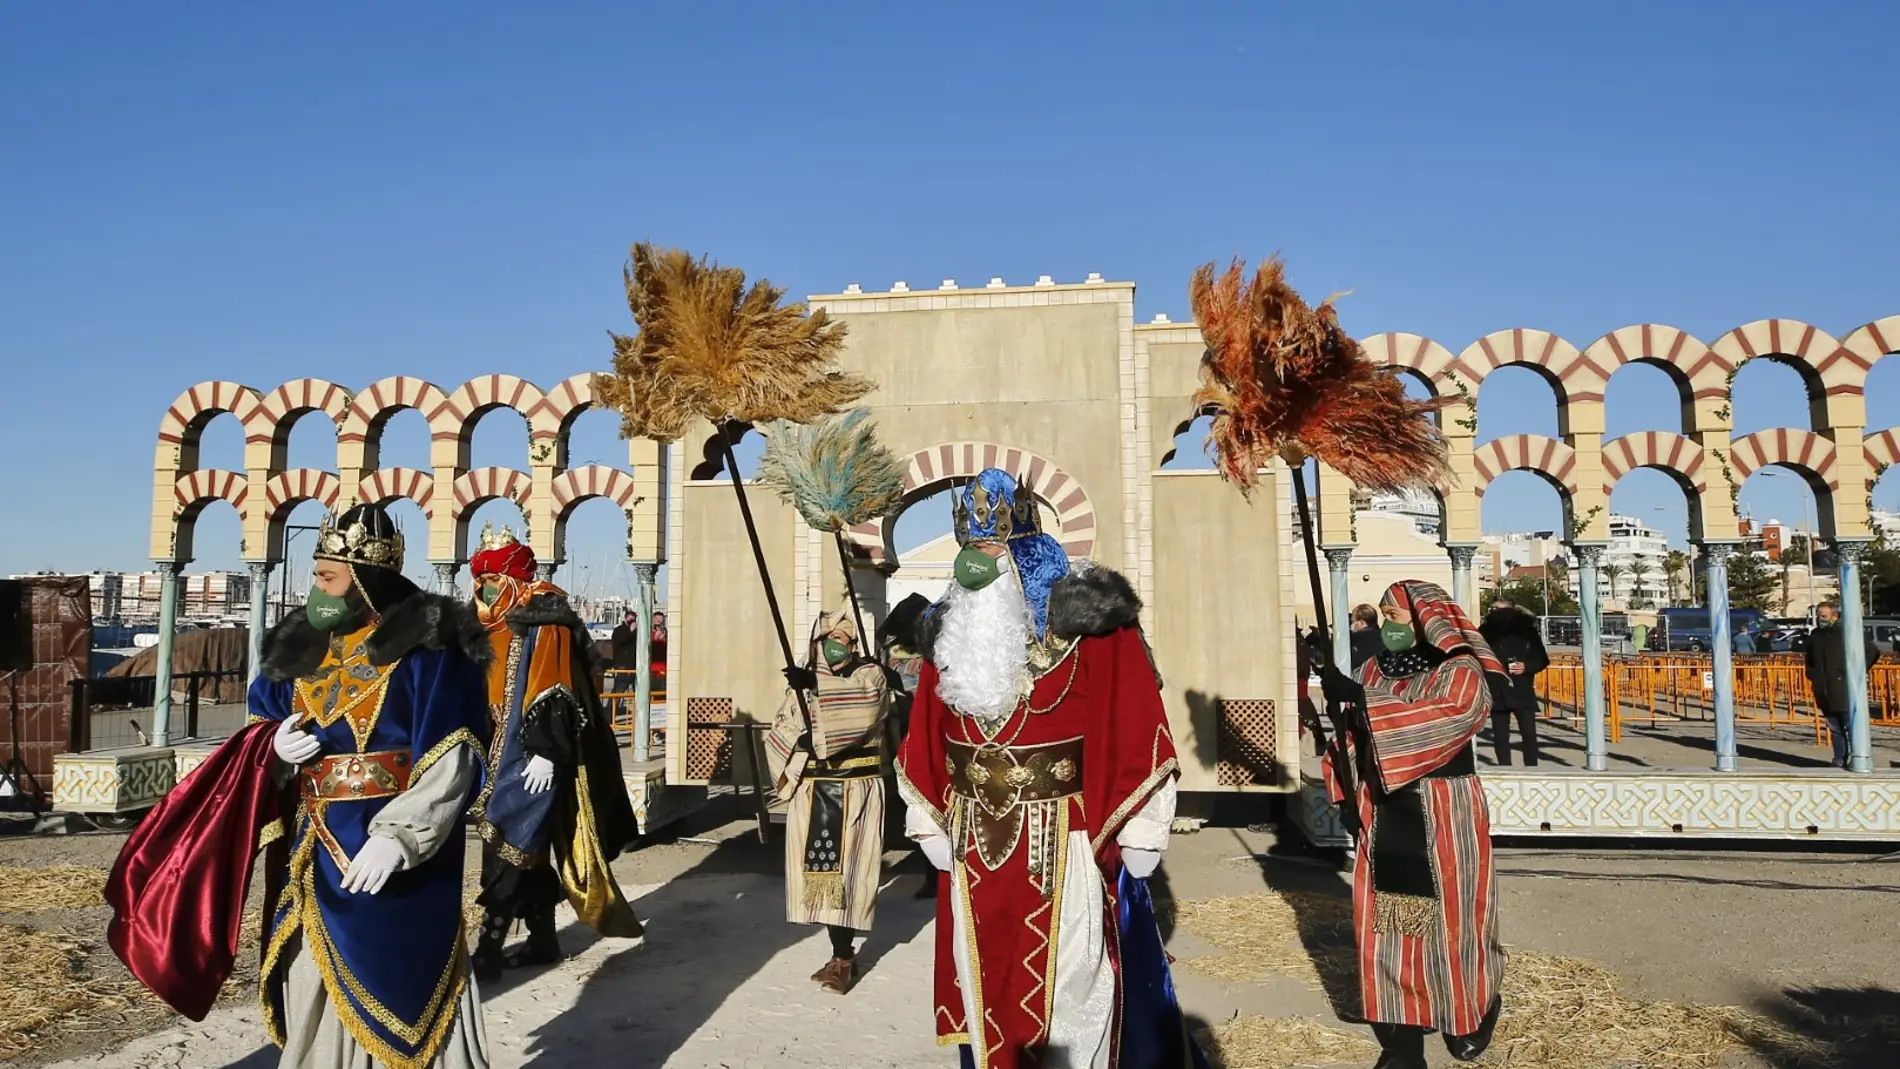 El Ayuntamiento de Torrevieja también ha previsto la presencia de los Reyes Magos en la pedanía de La Mata durante la jornada del 5 de enero, en una carpa que se instalará en la Plaza de Encarnación Puchol 